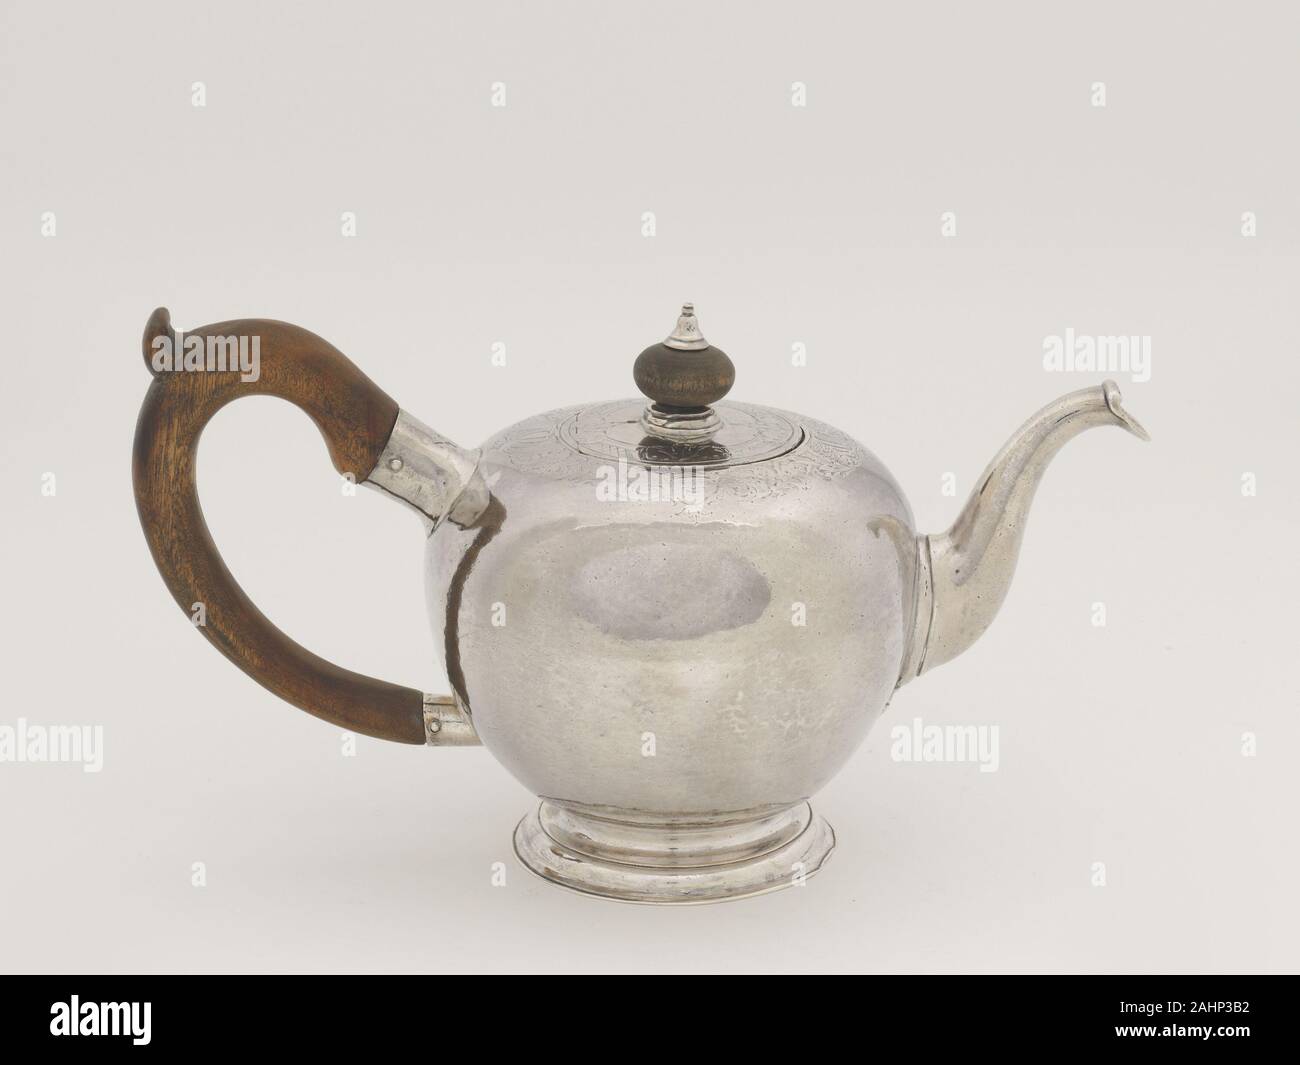 Jakob Hurd. Teekanne. 1740 - 1755. Boston. Silber und Walnuss Die runde  Form dieser Teekanne aus früheren Chinesisch und Englisch Keramik  Prototypen übernommen wurde. Das Design wurde besonders populär in der  Gegend